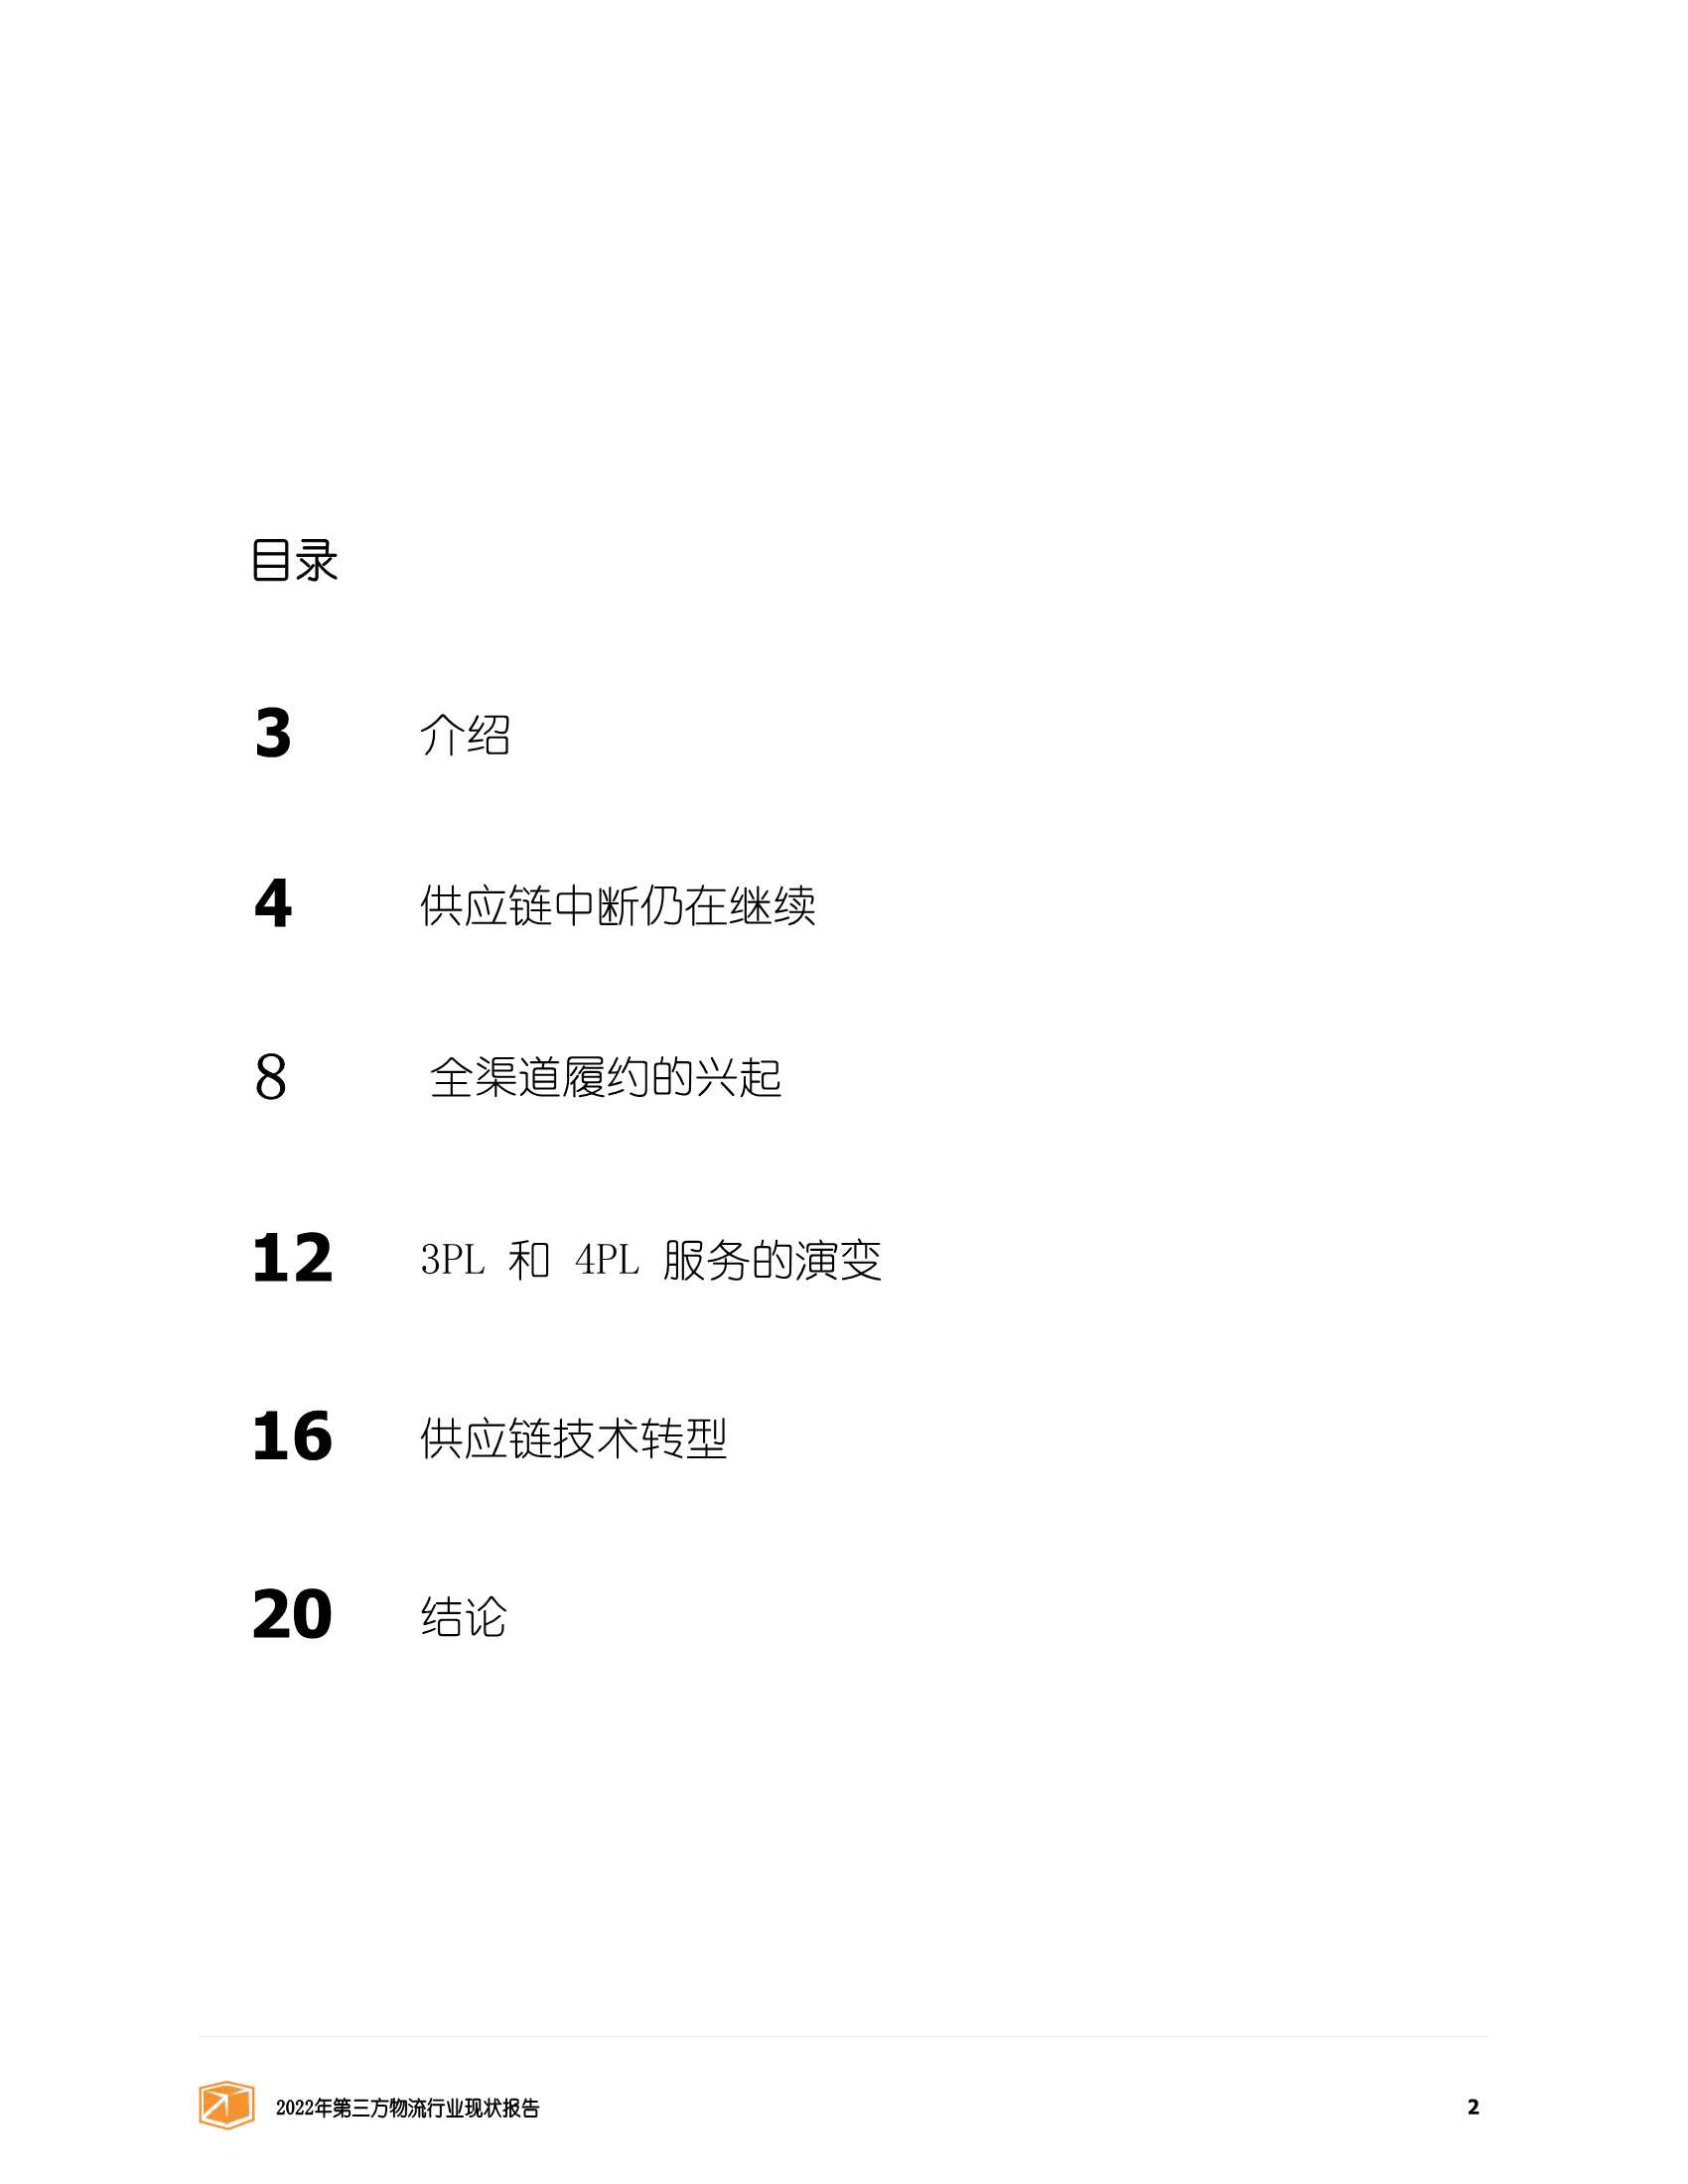 2022年第三方物流行业发展状况报告（中文版）-2022.03-22页